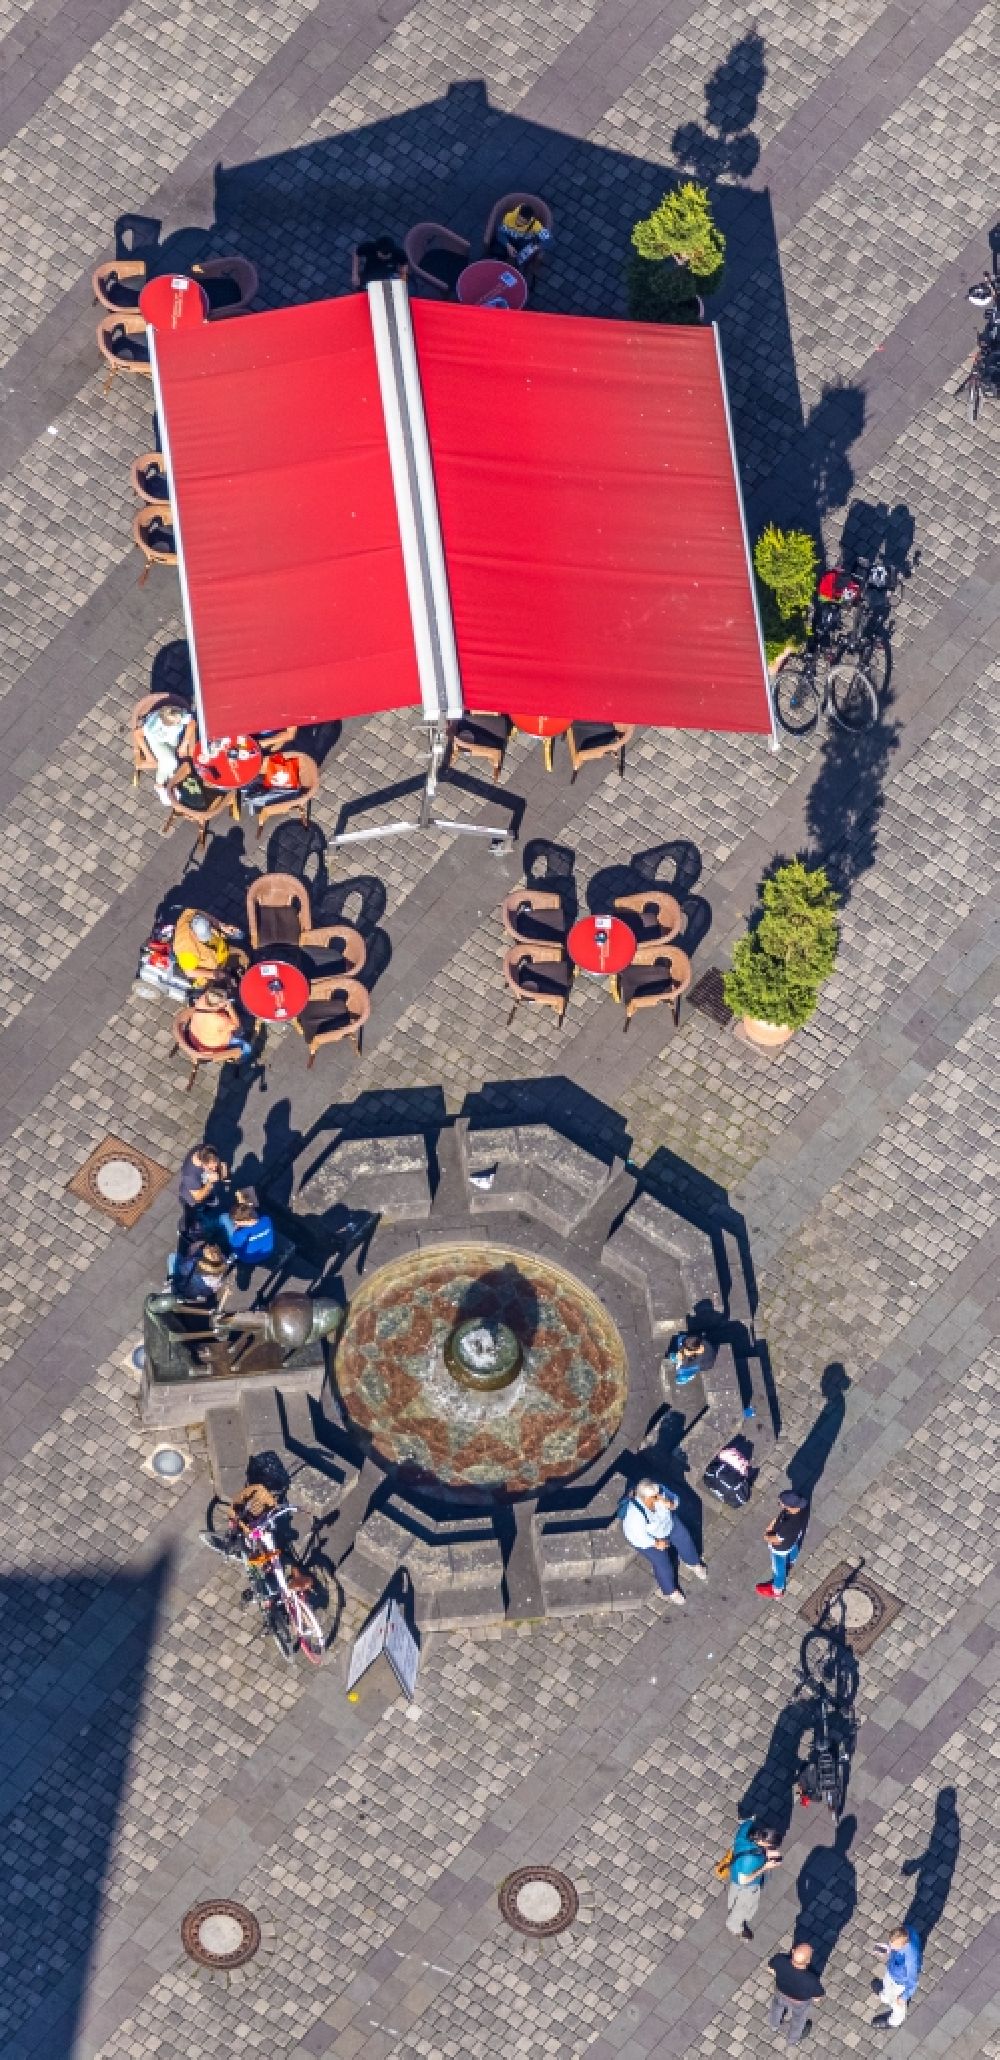 Unna von oben - Wasserspiele- Brunnen des Eselsbrunnen am Markt in Unna im Bundesland Nordrhein-Westfalen, Deutschland